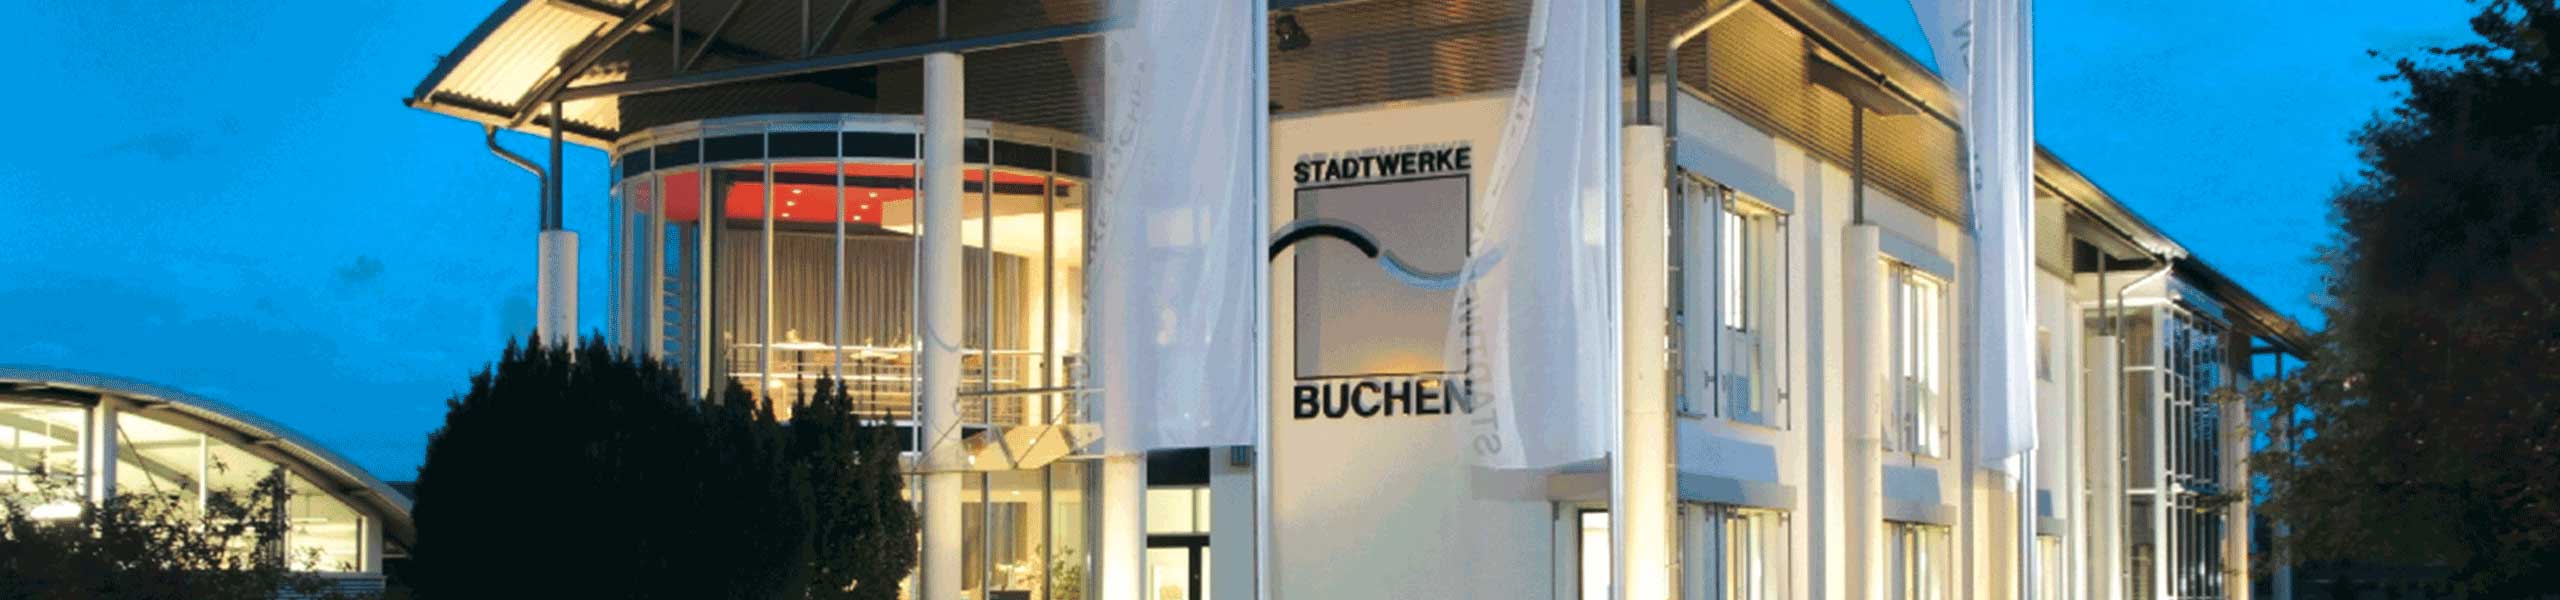 Stadtwerke Buchen GmbH & Co KG - Ihr Versorger vor Ort - Aktuelles